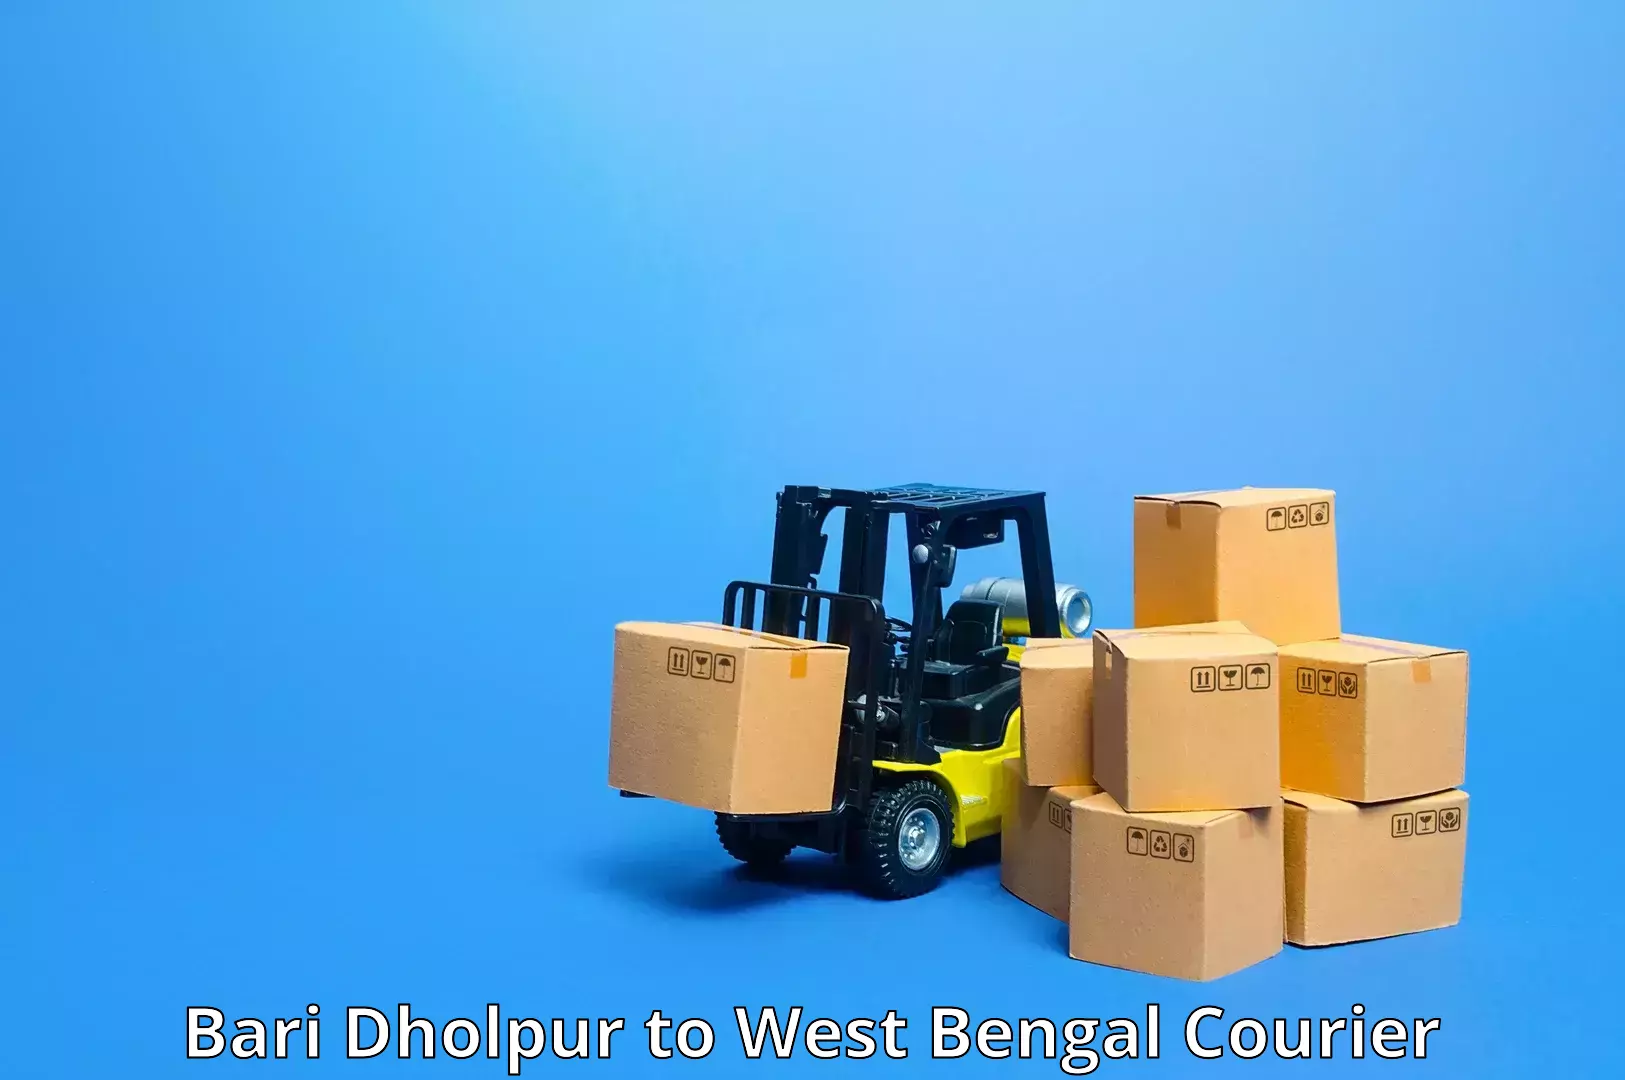 Fragile item shipping Bari Dholpur to Kolkata Port